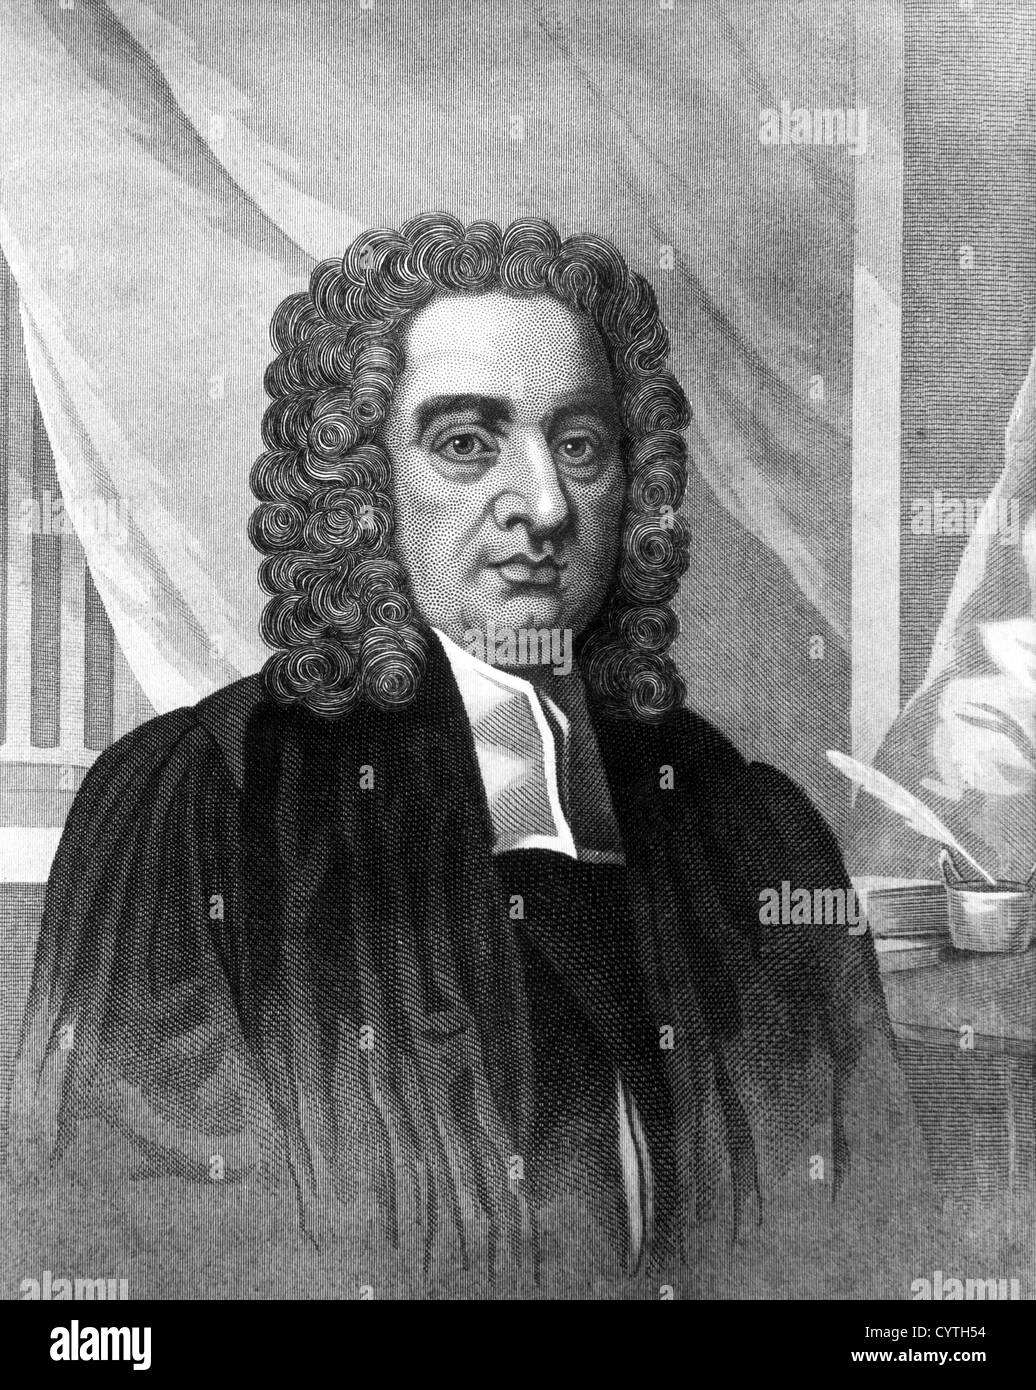 Jonathan Swift, English satirist and clergyman Stock Photo